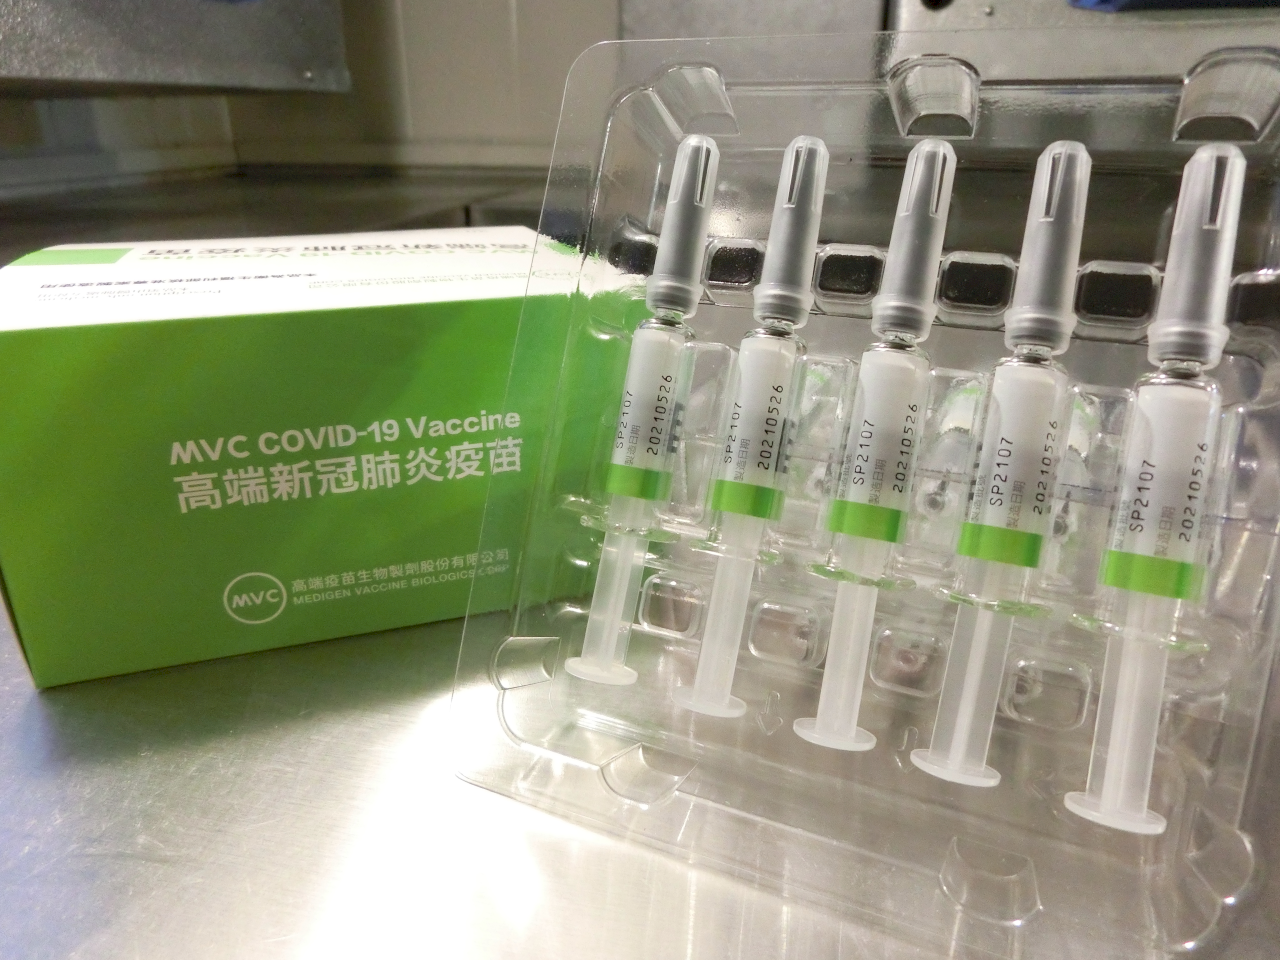 Des résultats encourageants pour la vaccination mixte AstraZeneca/Medigen